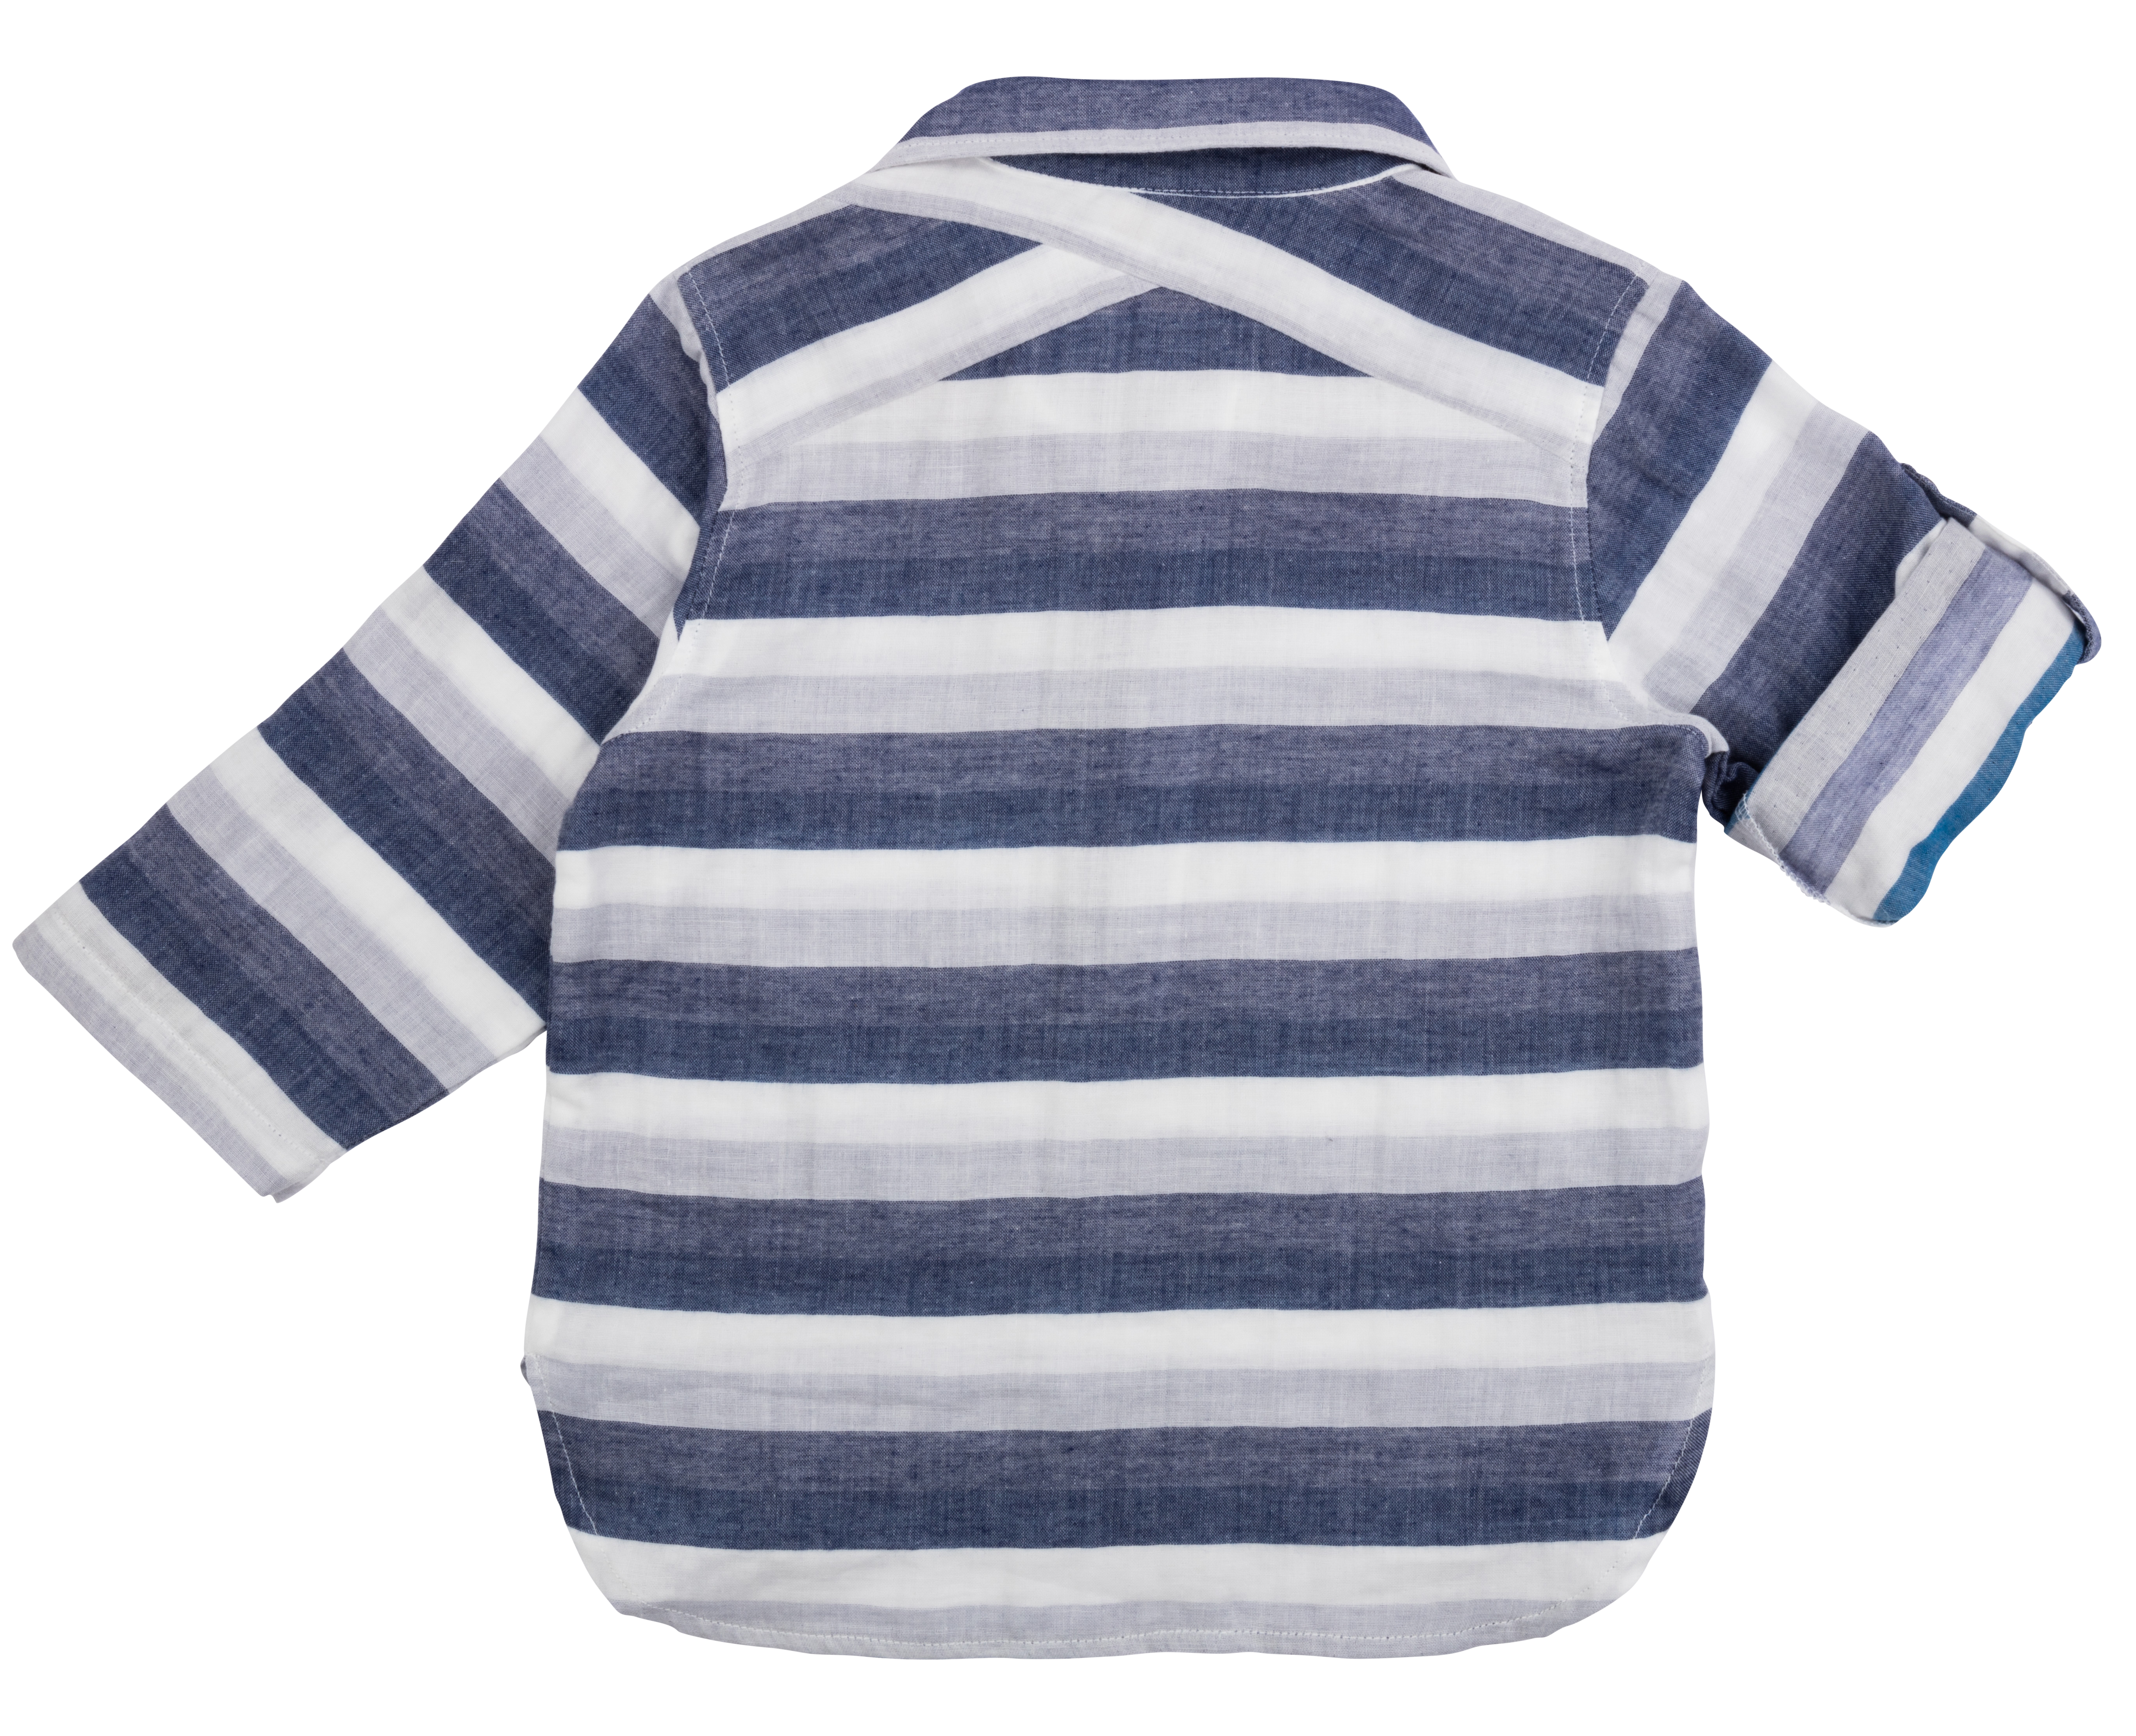 Camp Shirt - Blue Blanket Stripes 